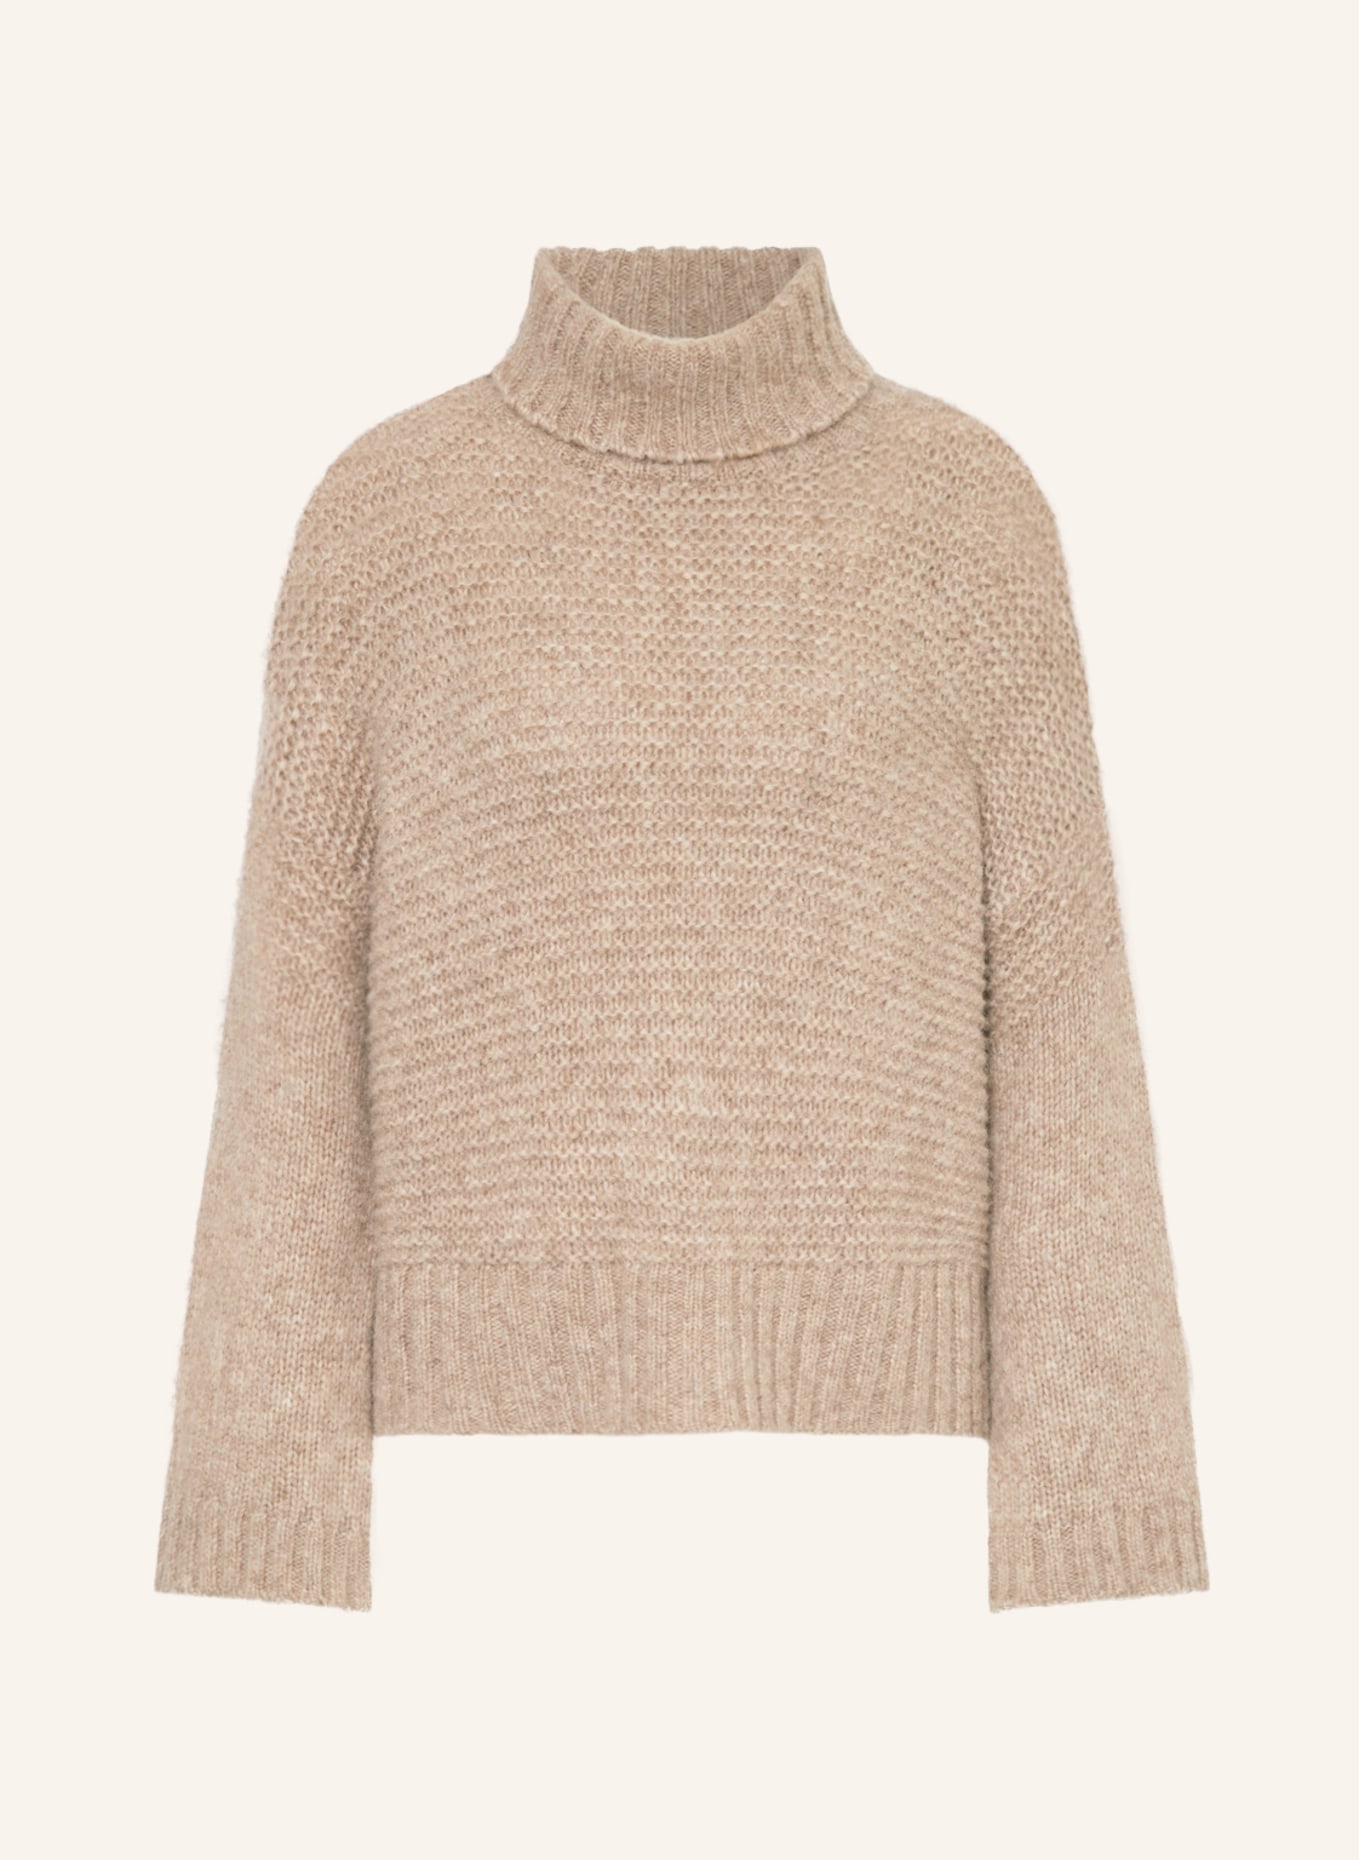 ANTONELLI firenze Turtleneck sweater AOSTA made of alpaca, Color: BEIGE (Image 1)